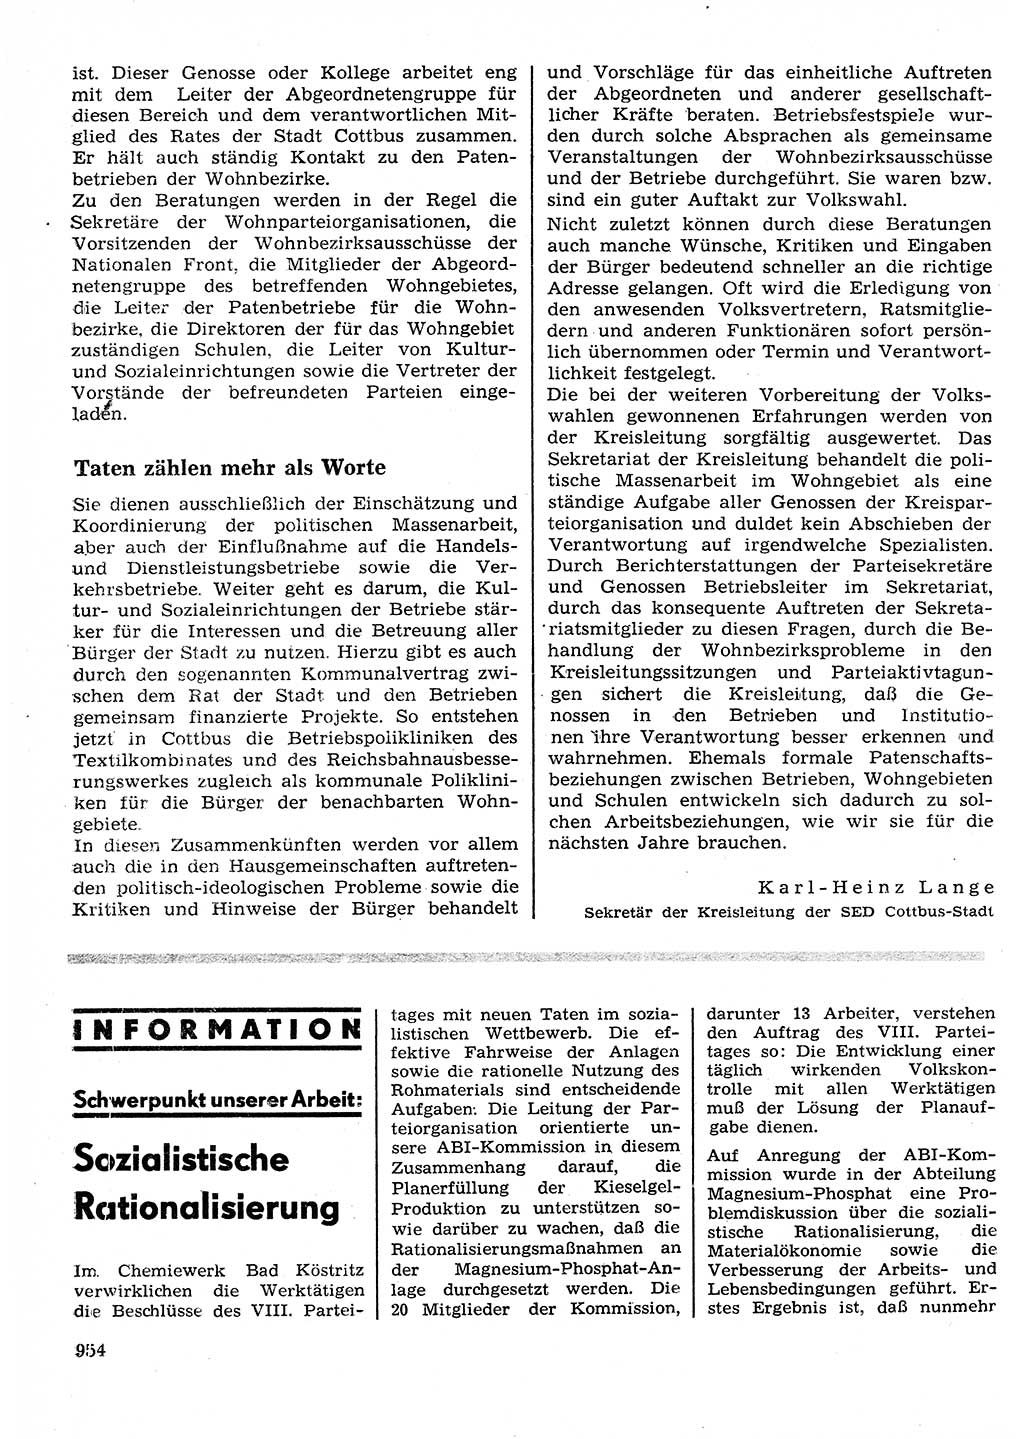 Neuer Weg (NW), Organ des Zentralkomitees (ZK) der SED (Sozialistische Einheitspartei Deutschlands) für Fragen des Parteilebens, 26. Jahrgang [Deutsche Demokratische Republik (DDR)] 1971, Seite 954 (NW ZK SED DDR 1971, S. 954)